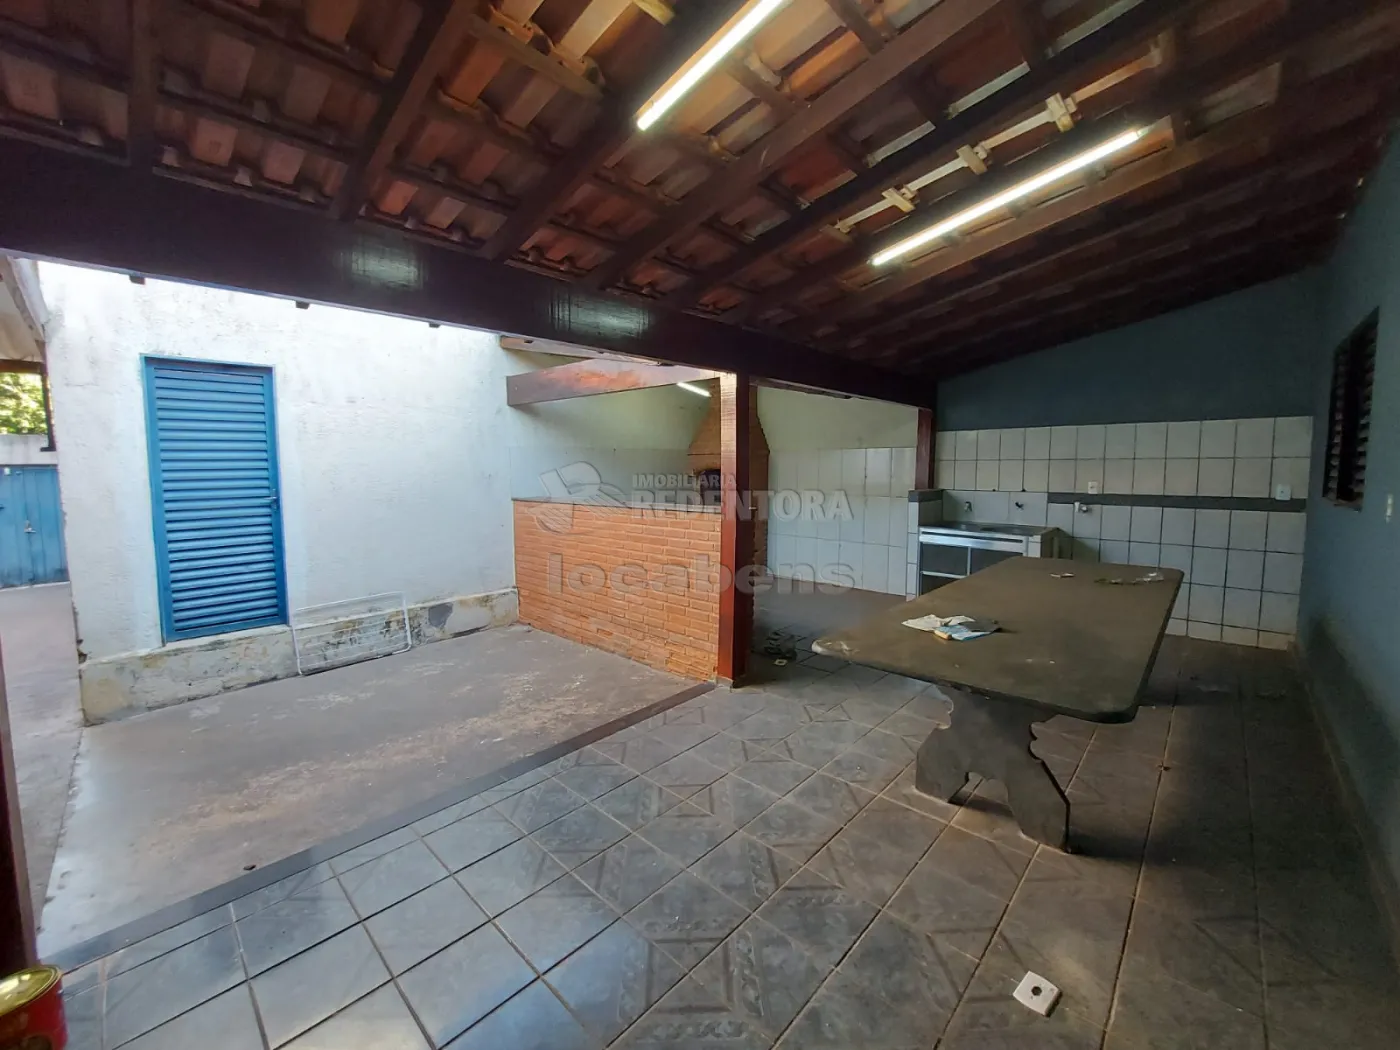 Alugar Casa / Padrão em São José do Rio Preto R$ 900,00 - Foto 7